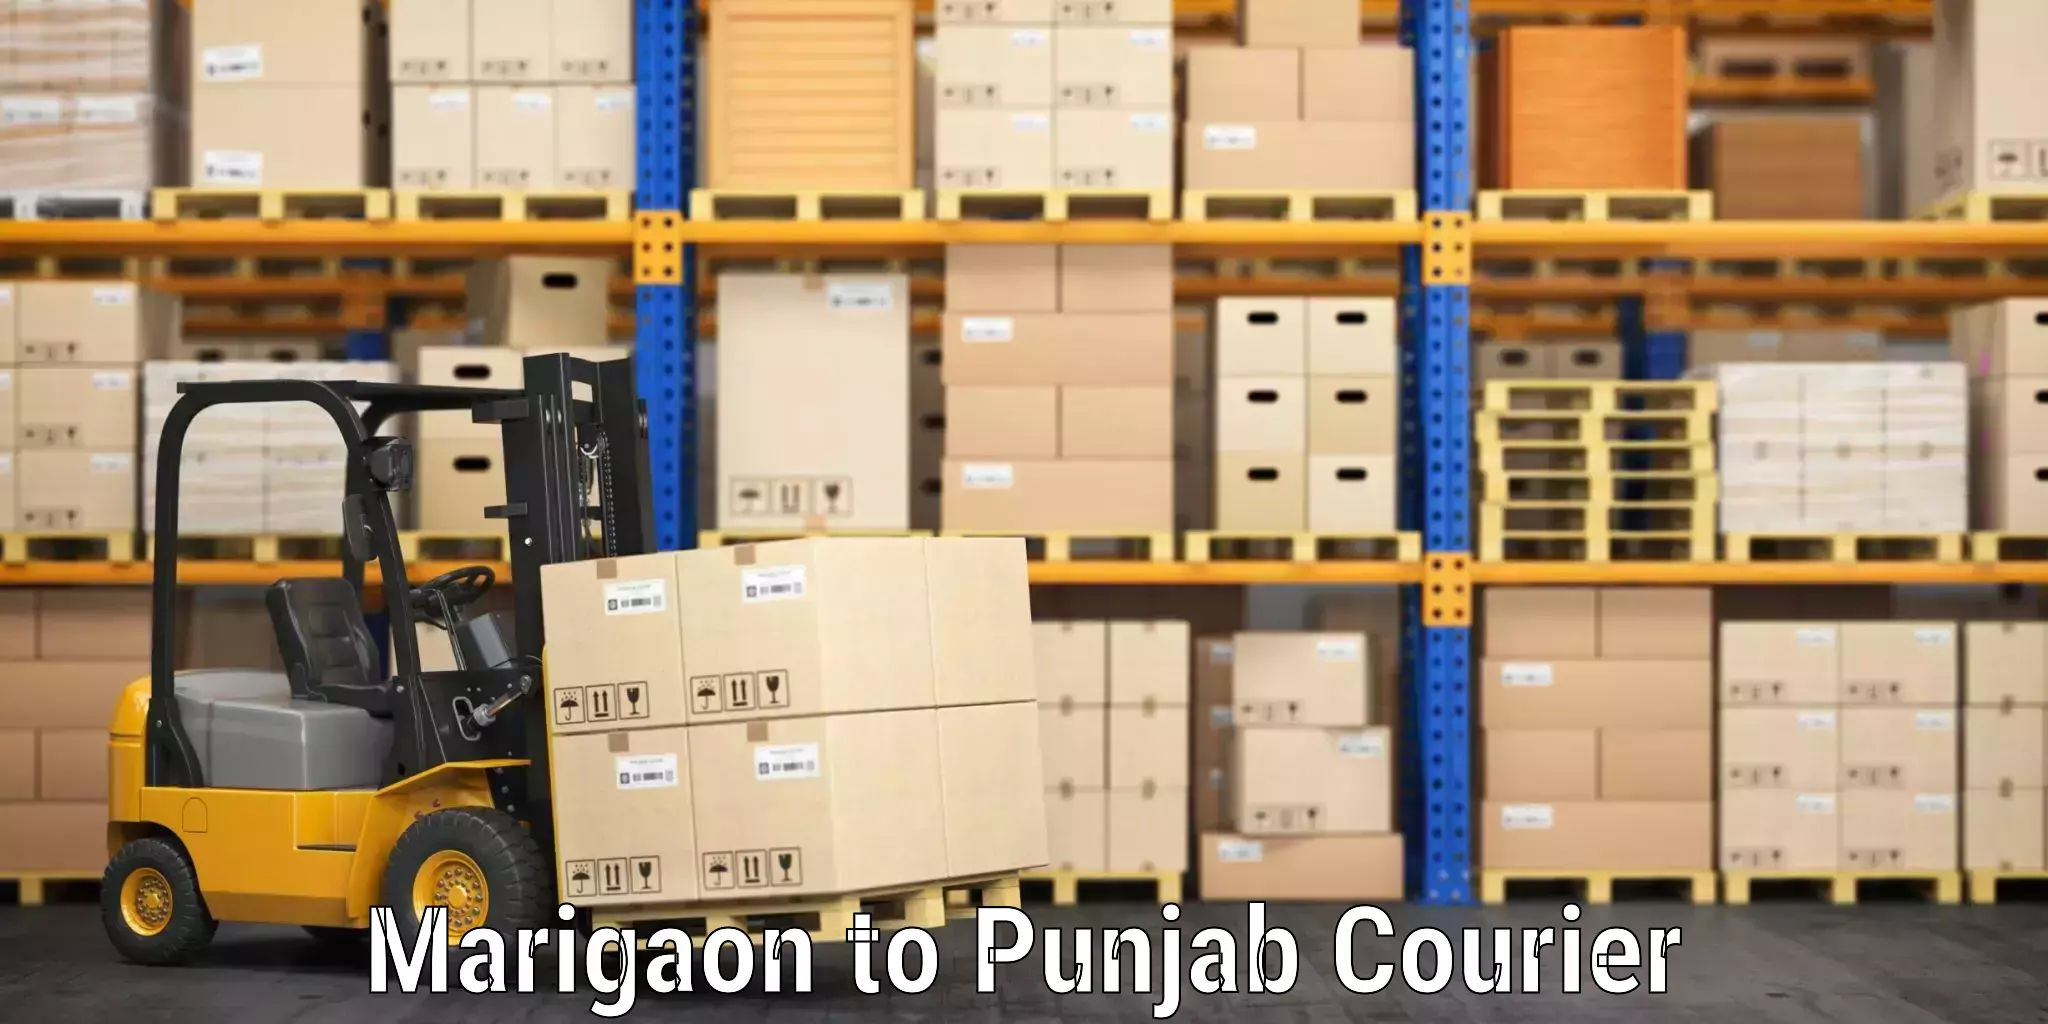 Quick luggage shipment Marigaon to Central University of Punjab Bathinda